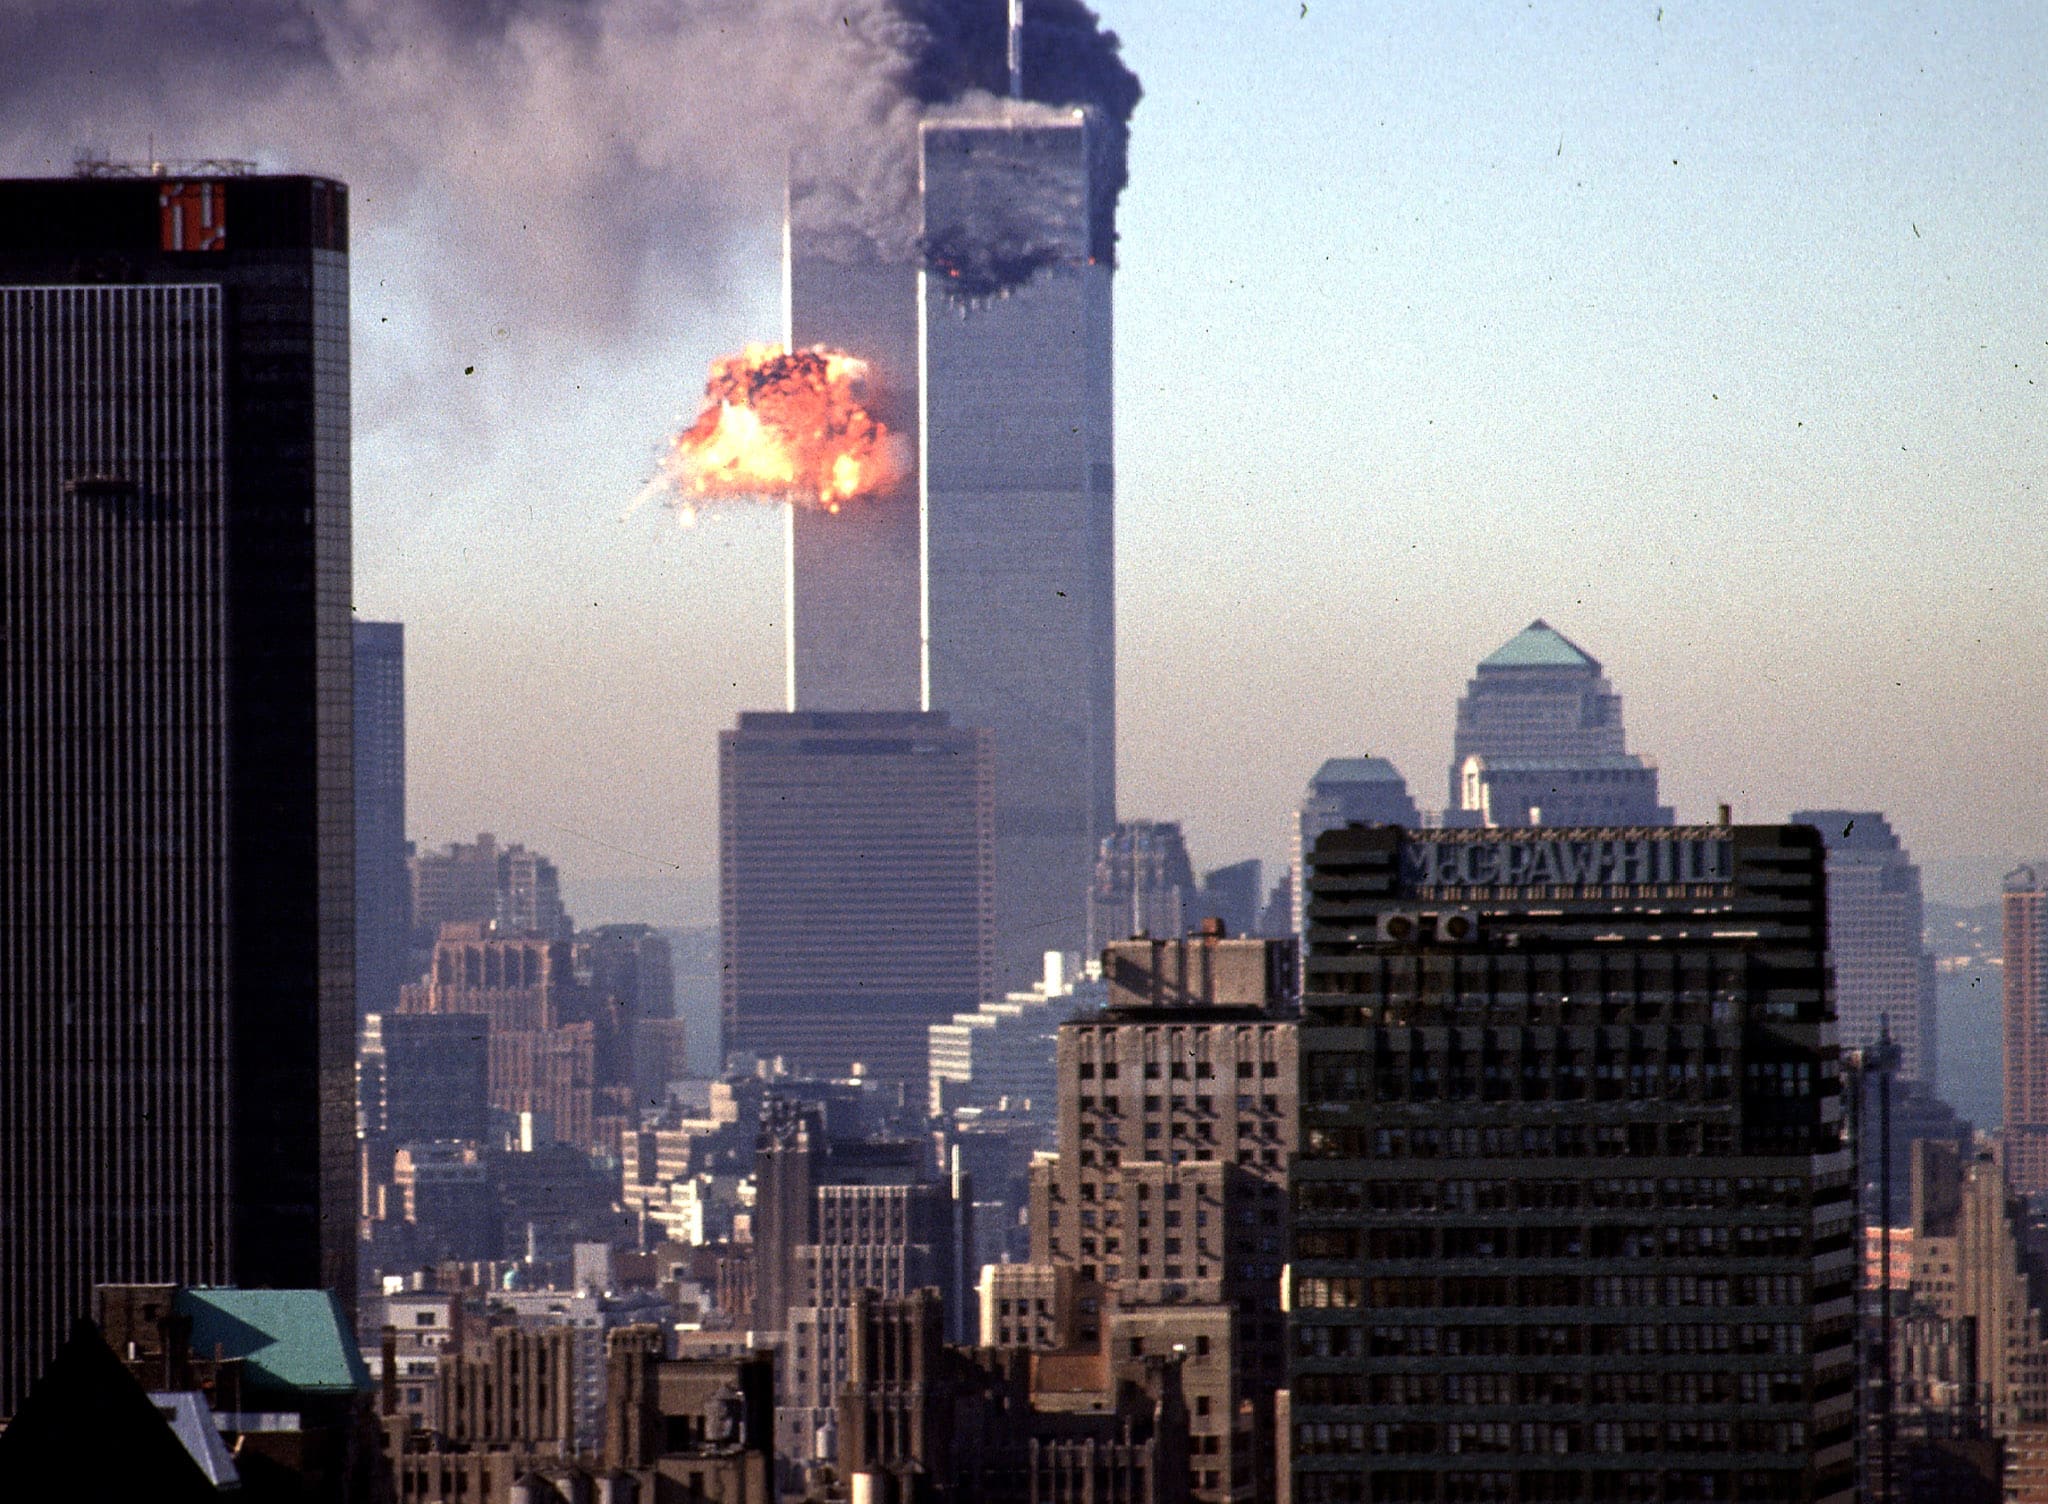 הפיגוע במגדלי התאומים בניו יורק, 11 בספטמבר 2001 (צילום: SETH MCALLISTER / AFP)